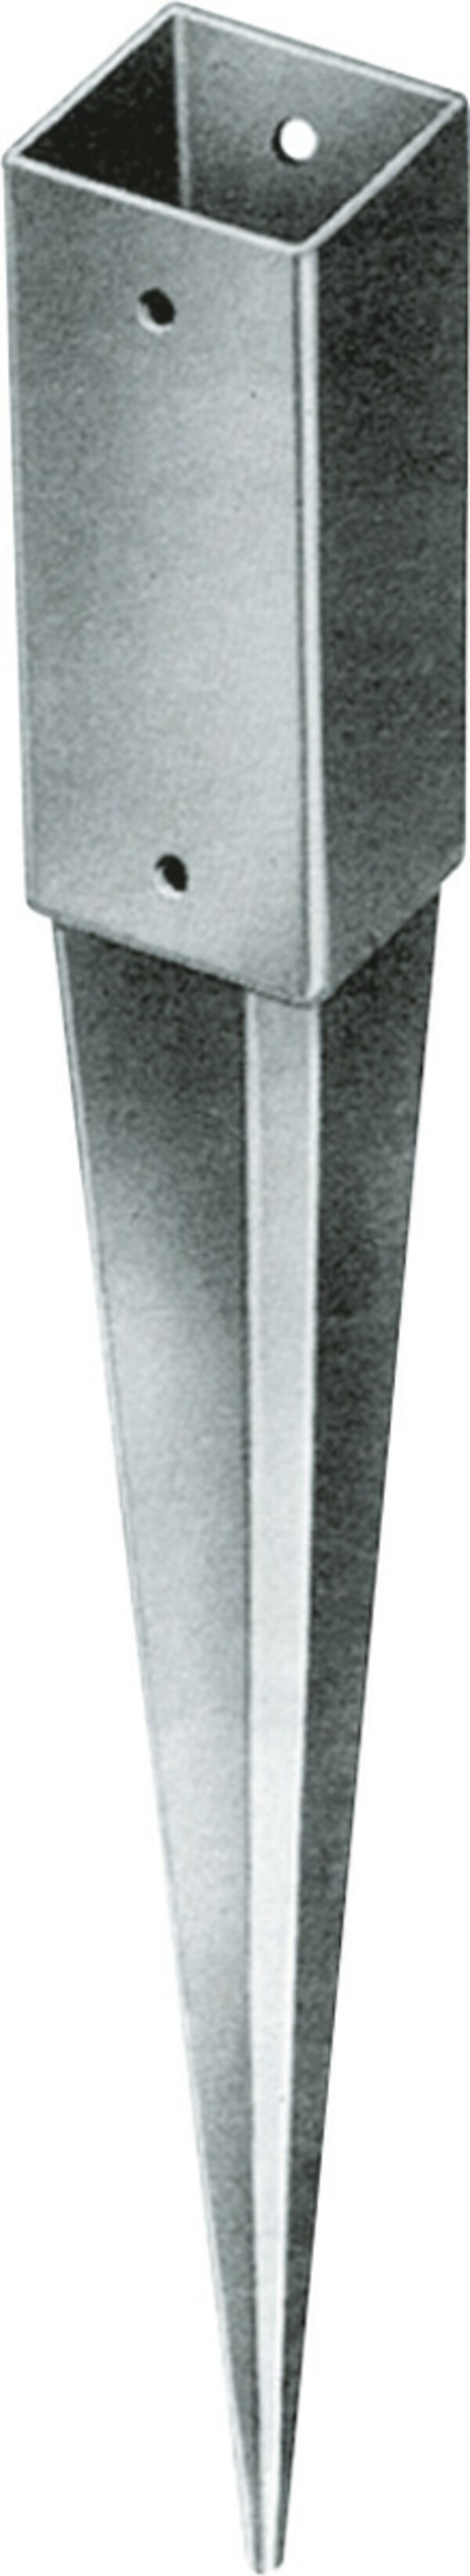 Bild 1 von TrendLine Einschlagbodenhülse 75 x 9,1 x 9,1 cm
, 
korrosionsbeständig